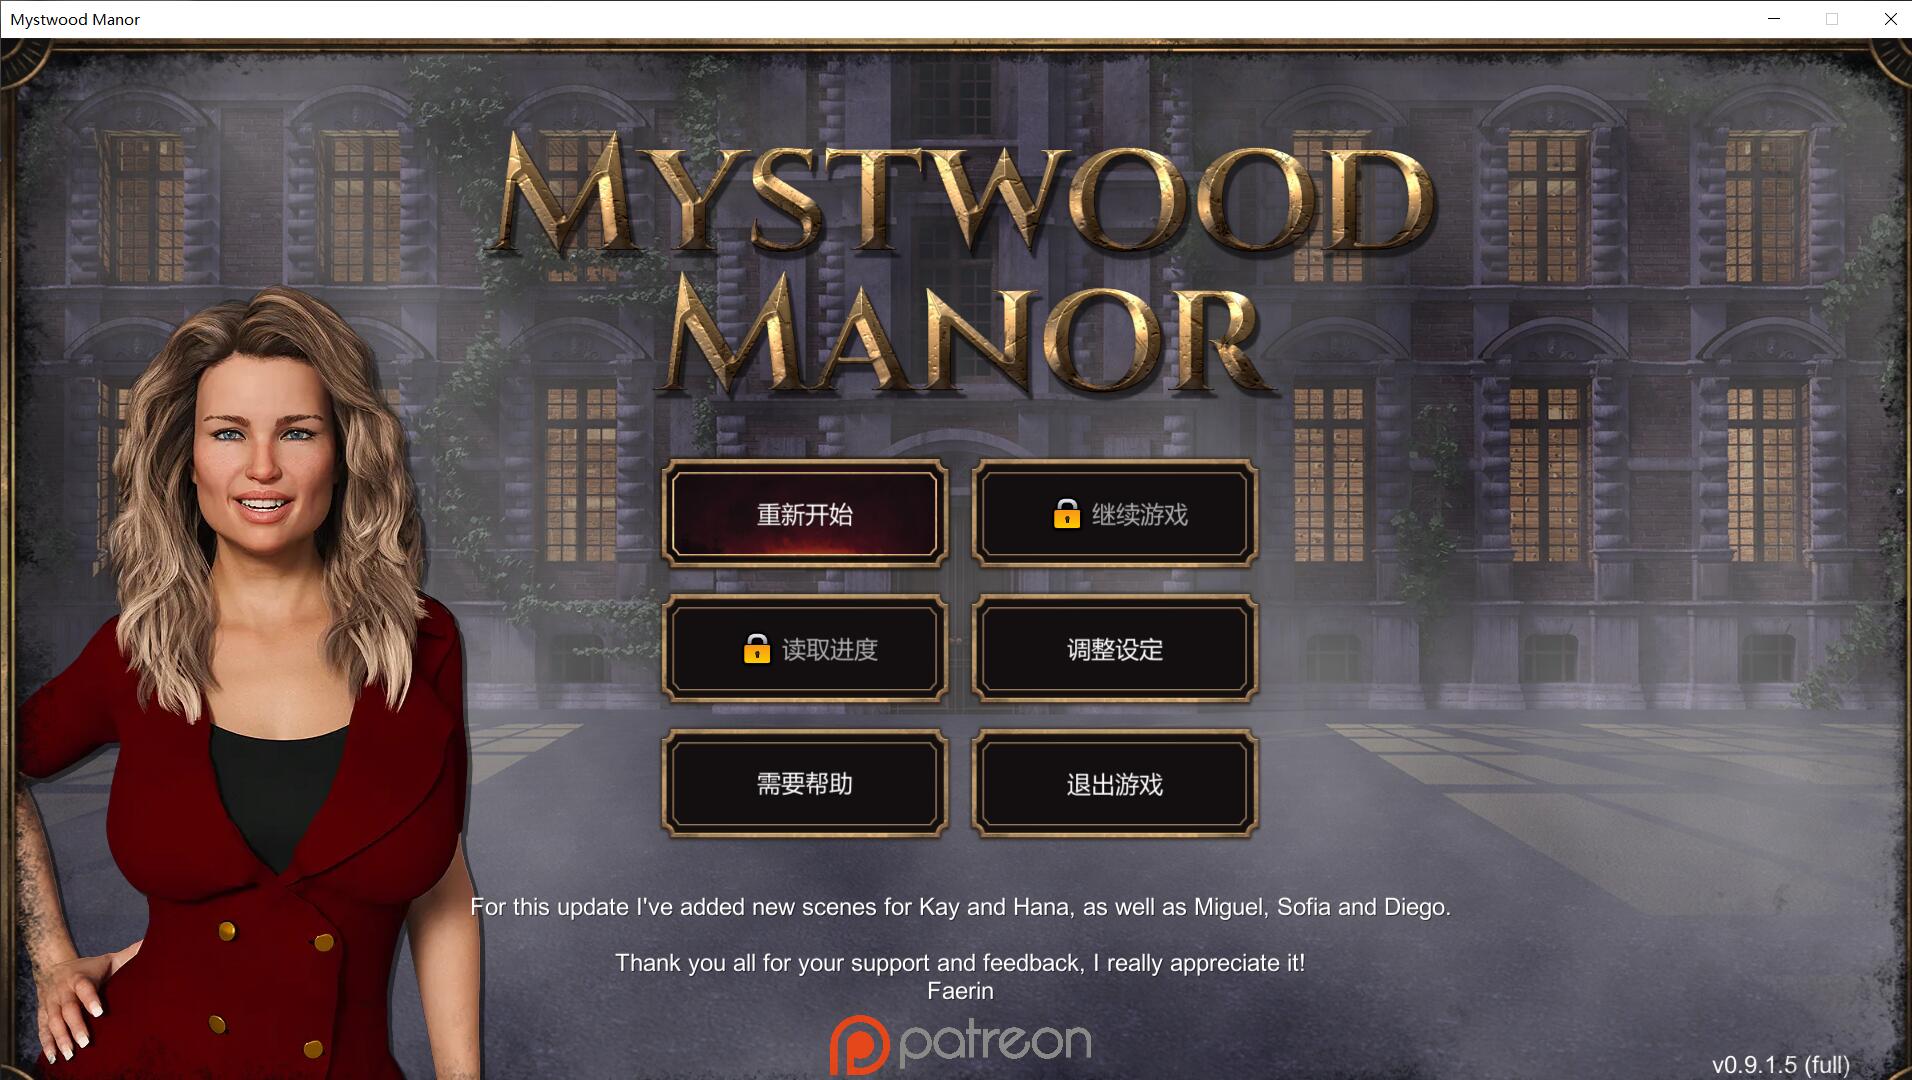 【欧美经营SLG/中文】幽灵庄园 Mystwood Manor v0.9.2 官方中文版 [$40赞助作弊版]【1.6G】-游戏论